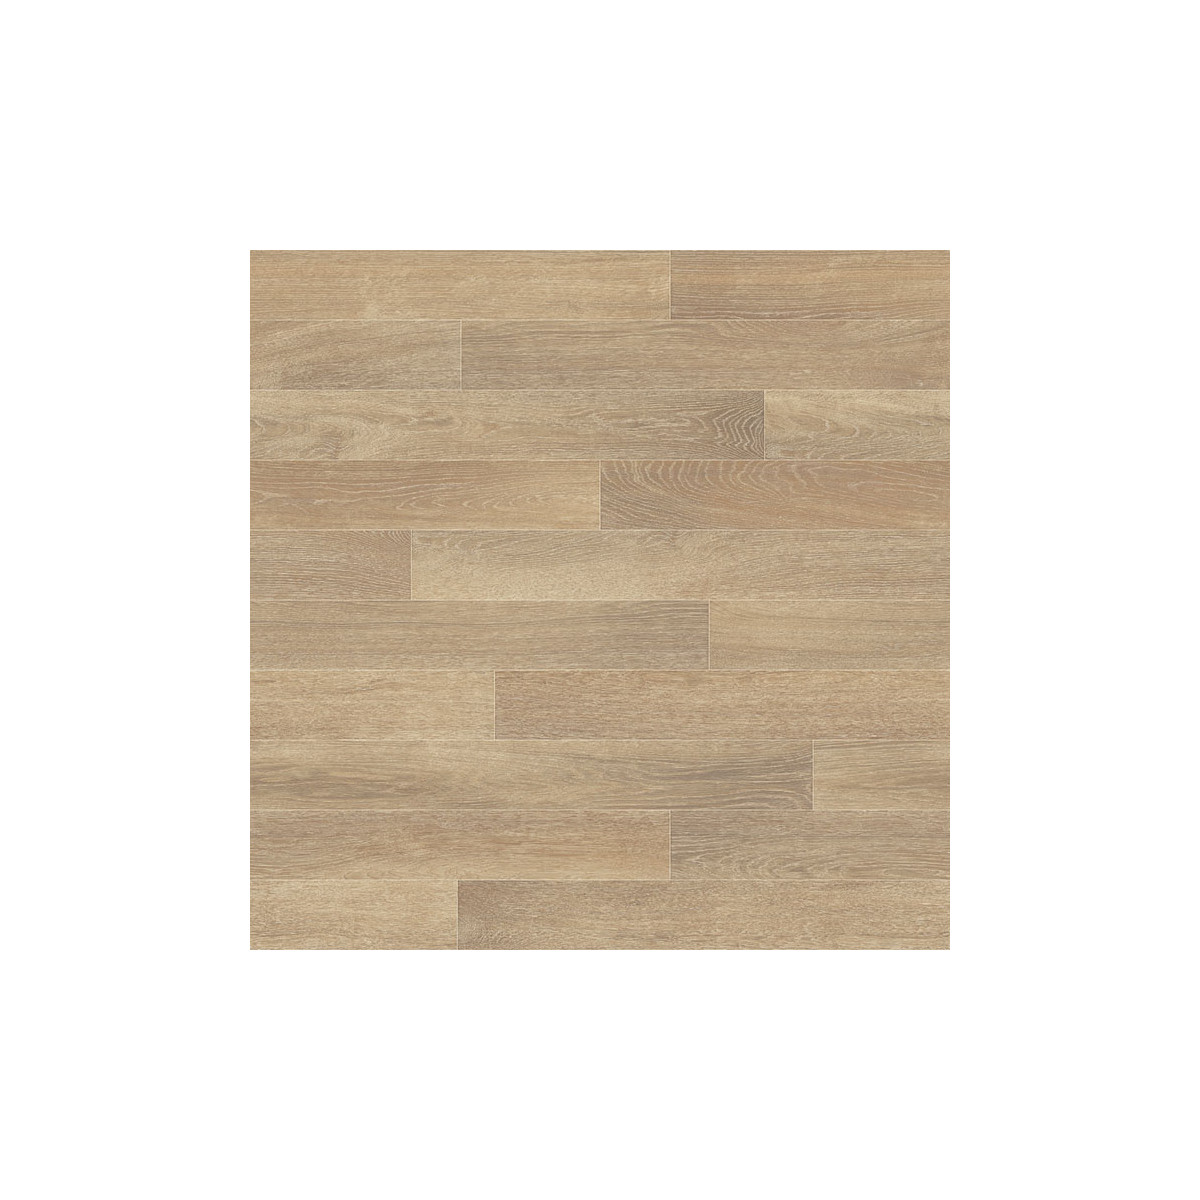 PVC podlaha Premier Wood 2861